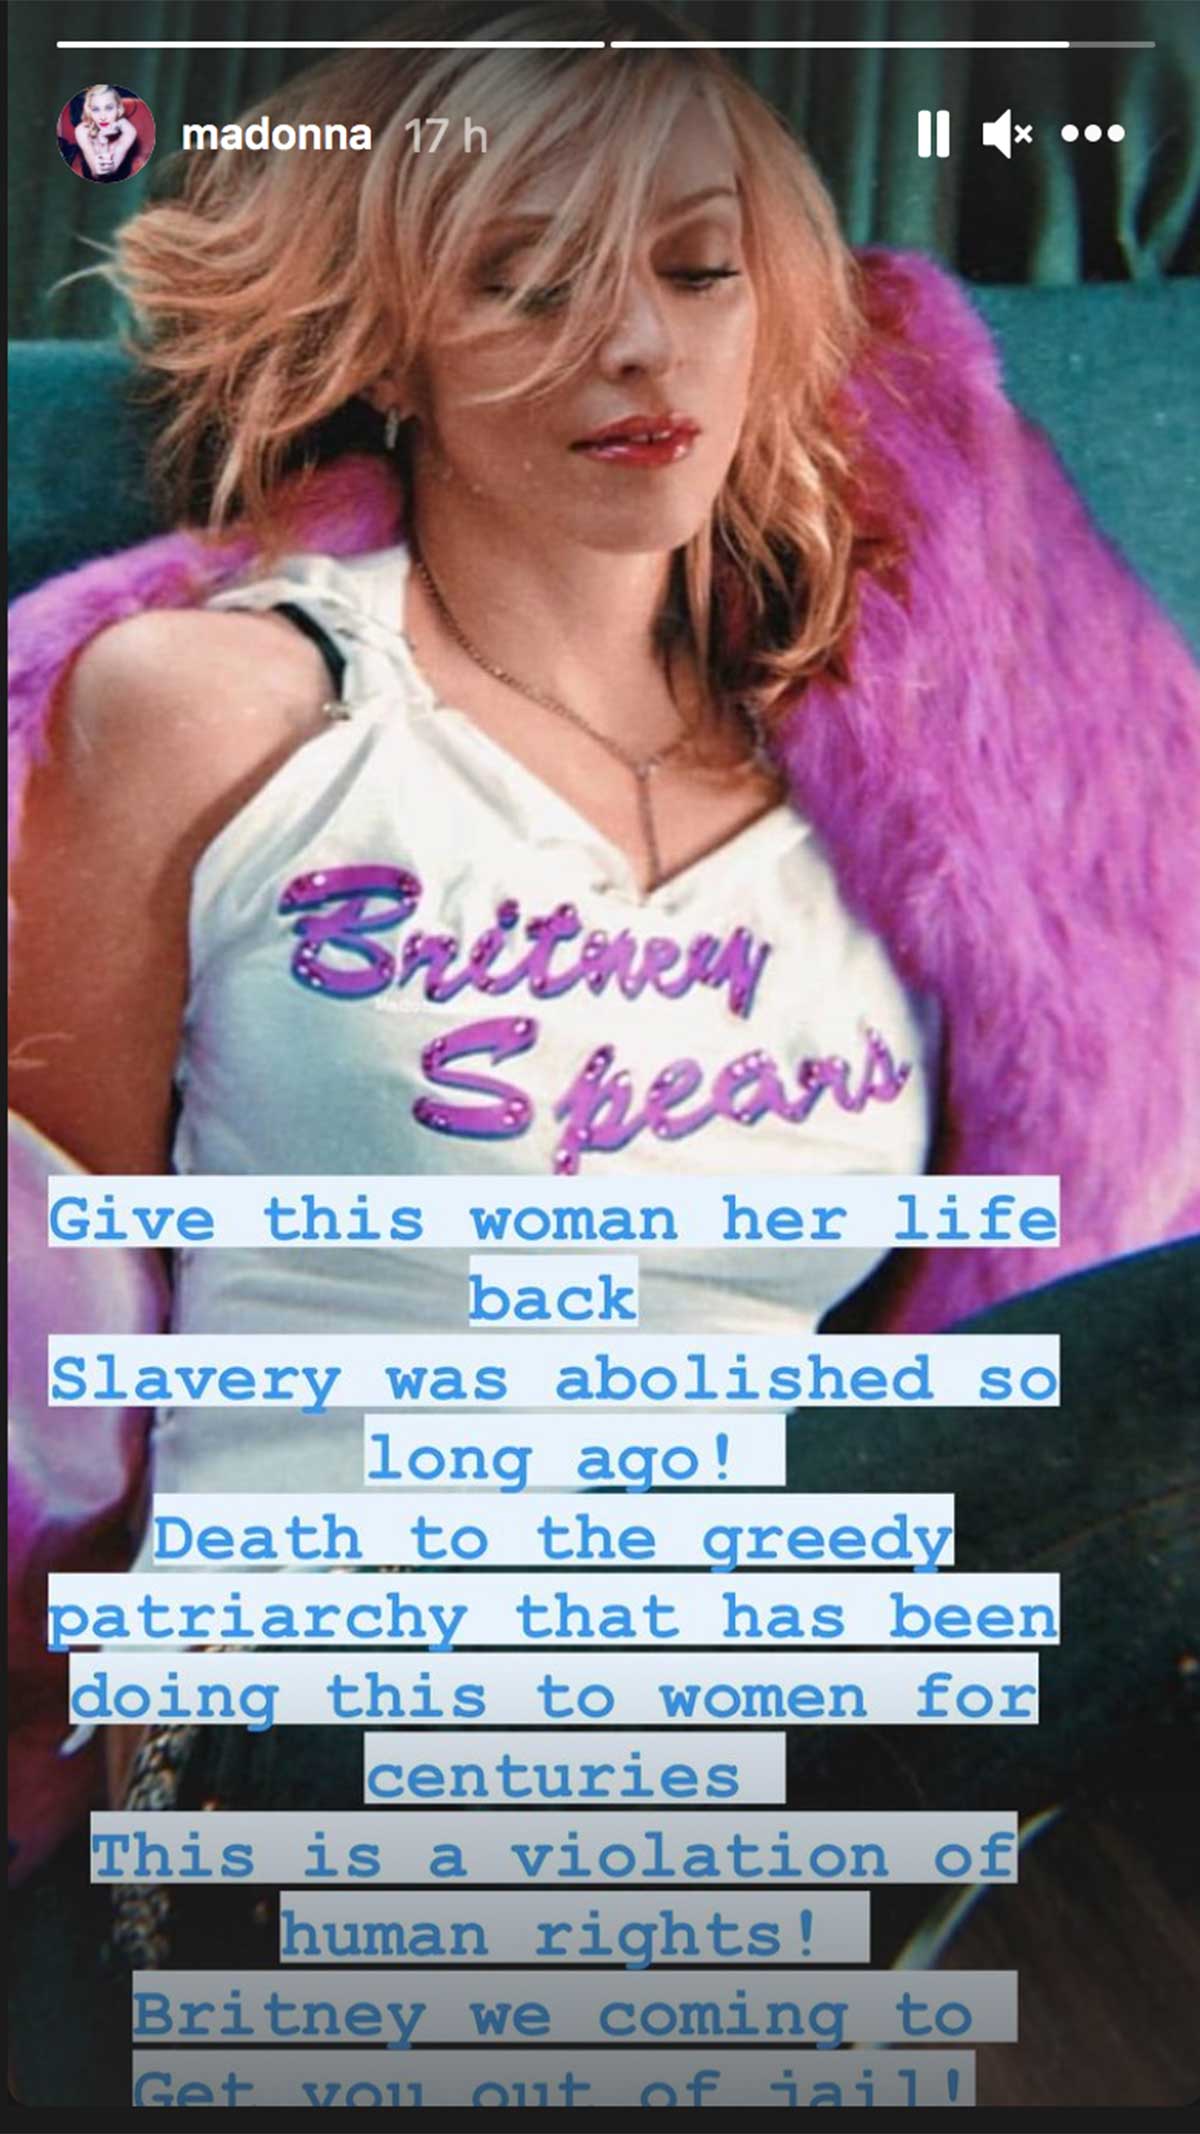 Madonna sobre tutela de Britney Spears: 'es una violación a los derechos humanos'